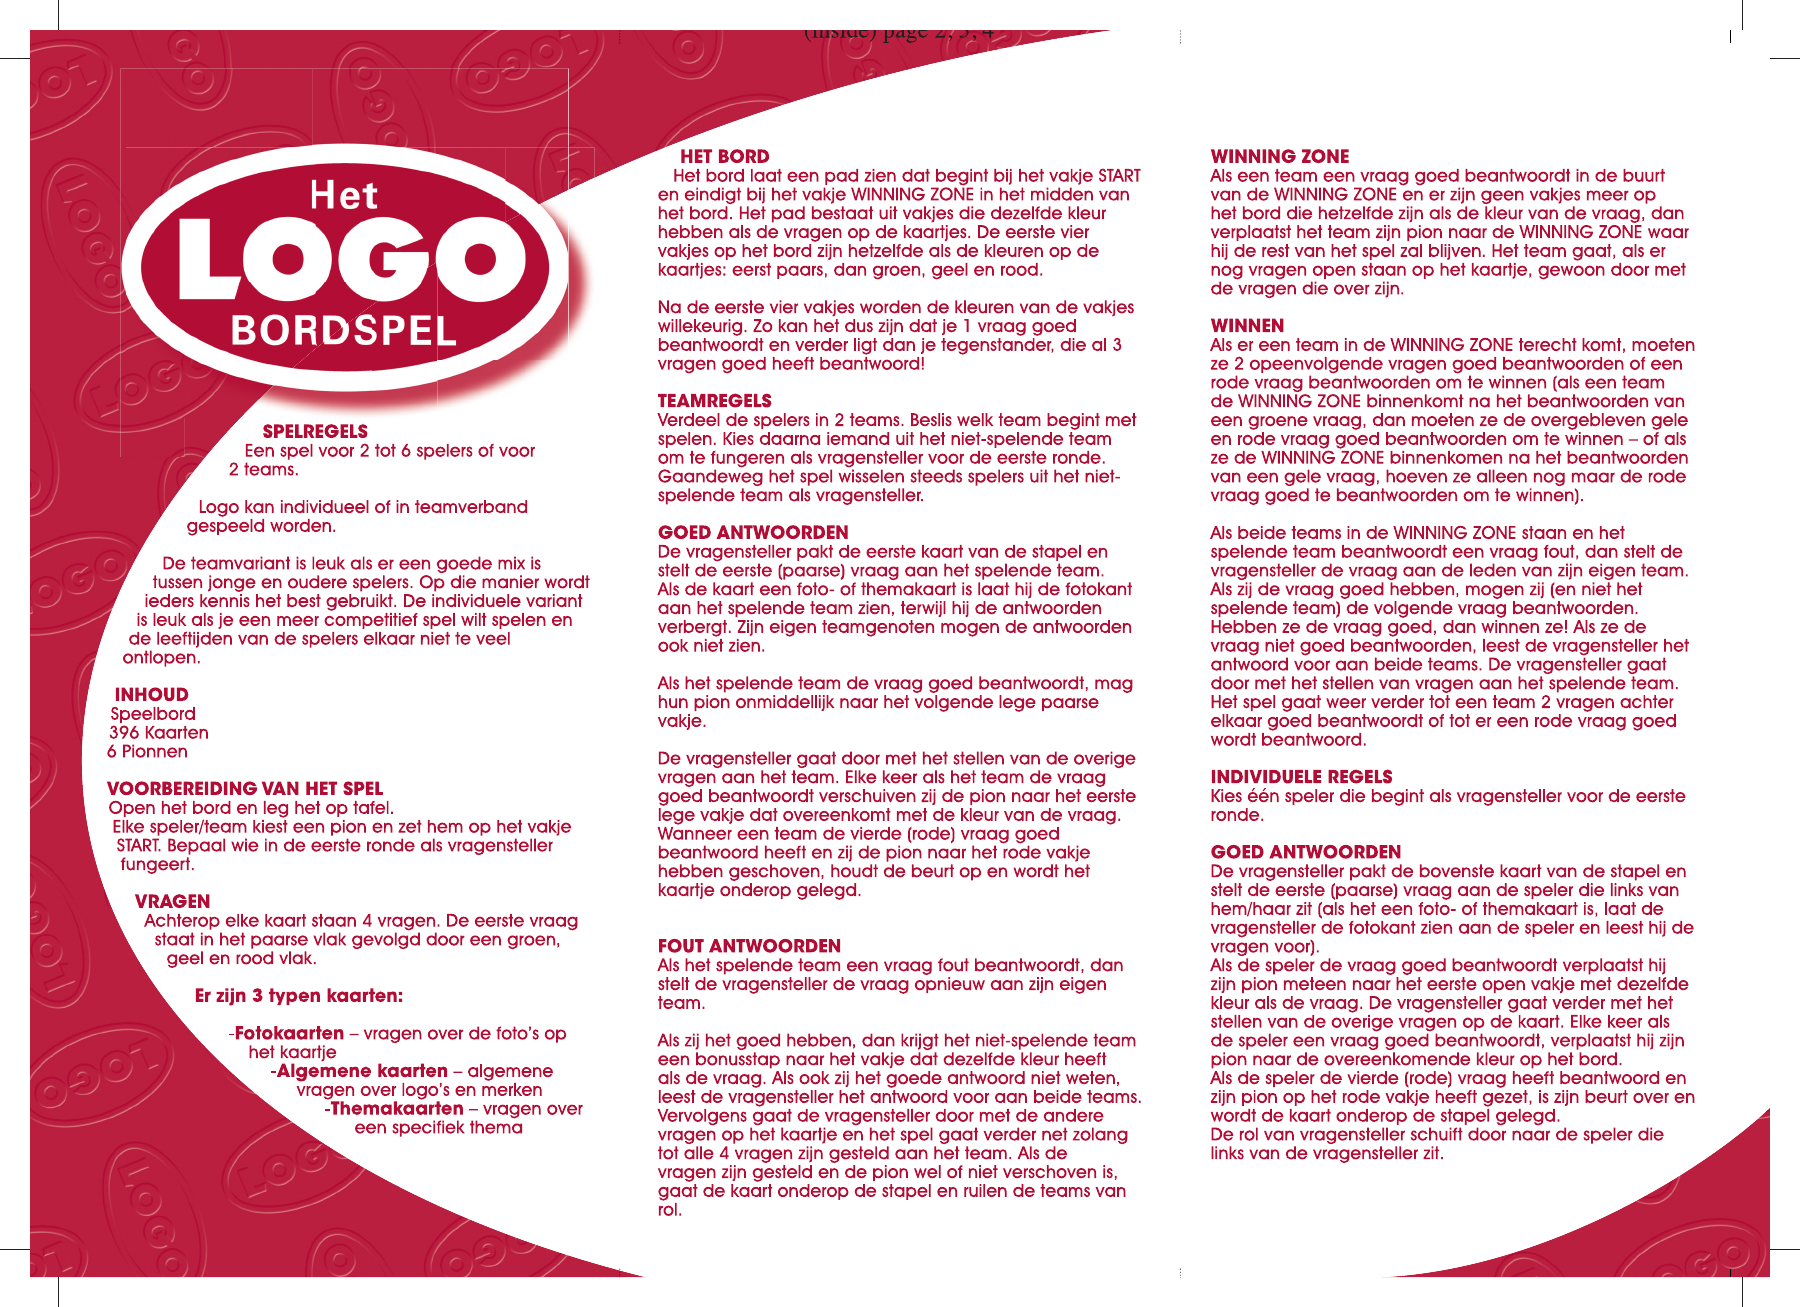 voor Inzichtelijk toernooi Manual Jumbo Het Logo Bordspel (page 1 of 2) (Dutch)